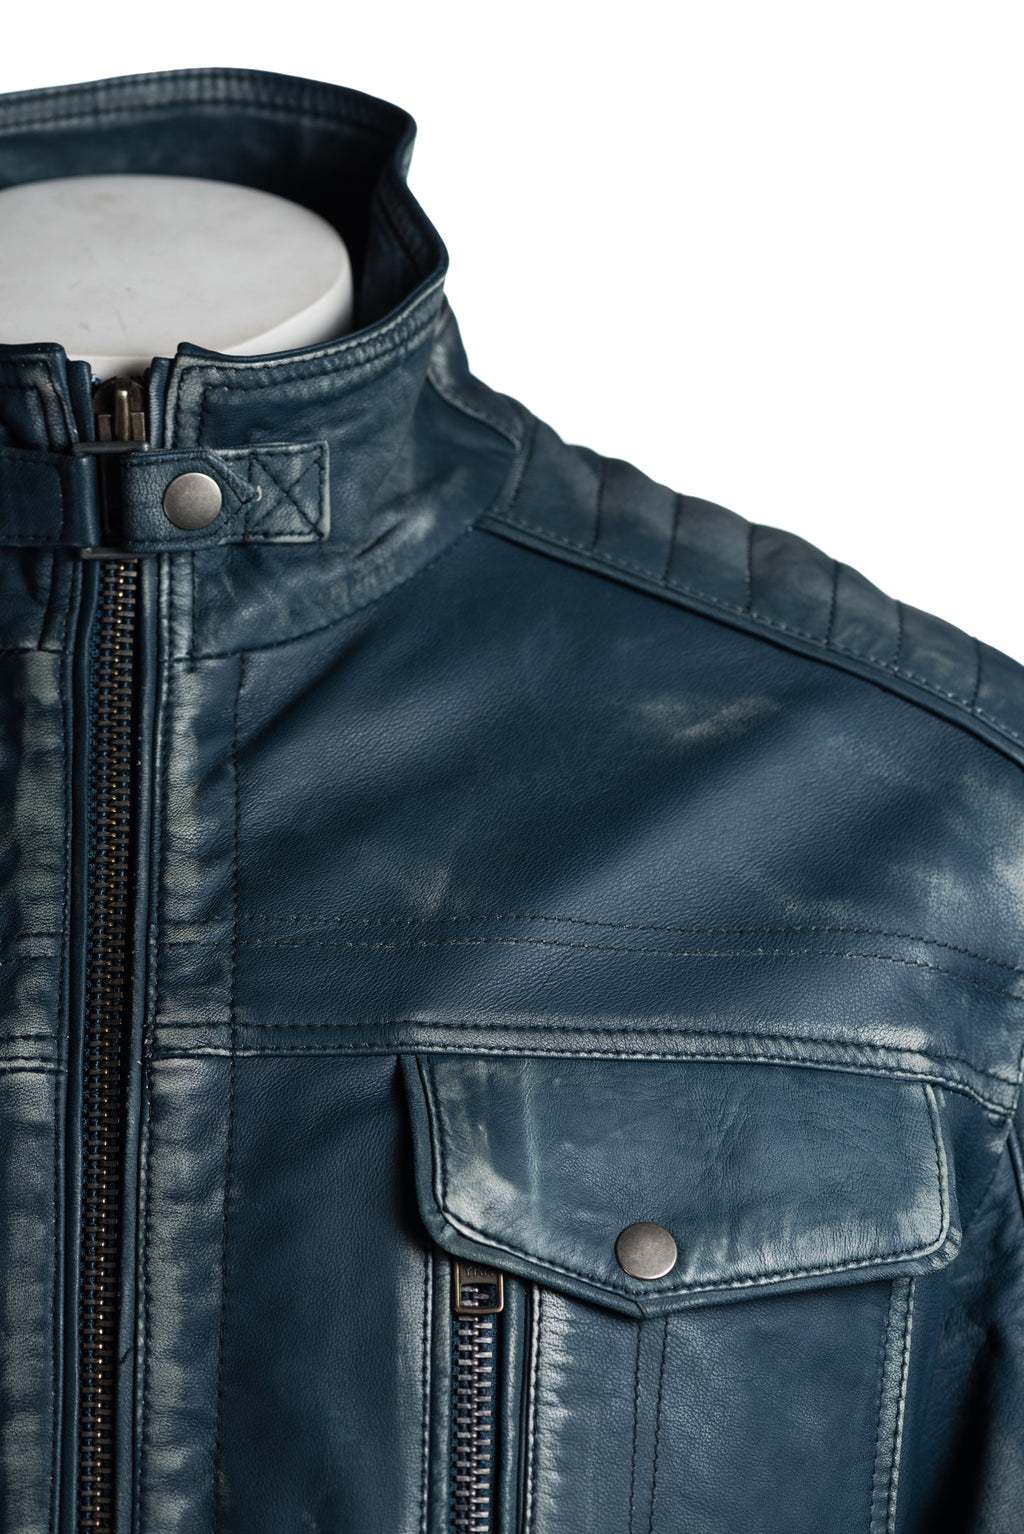 Men's Antique Blue Vintage Biker Style Leather Jacket - Dominico